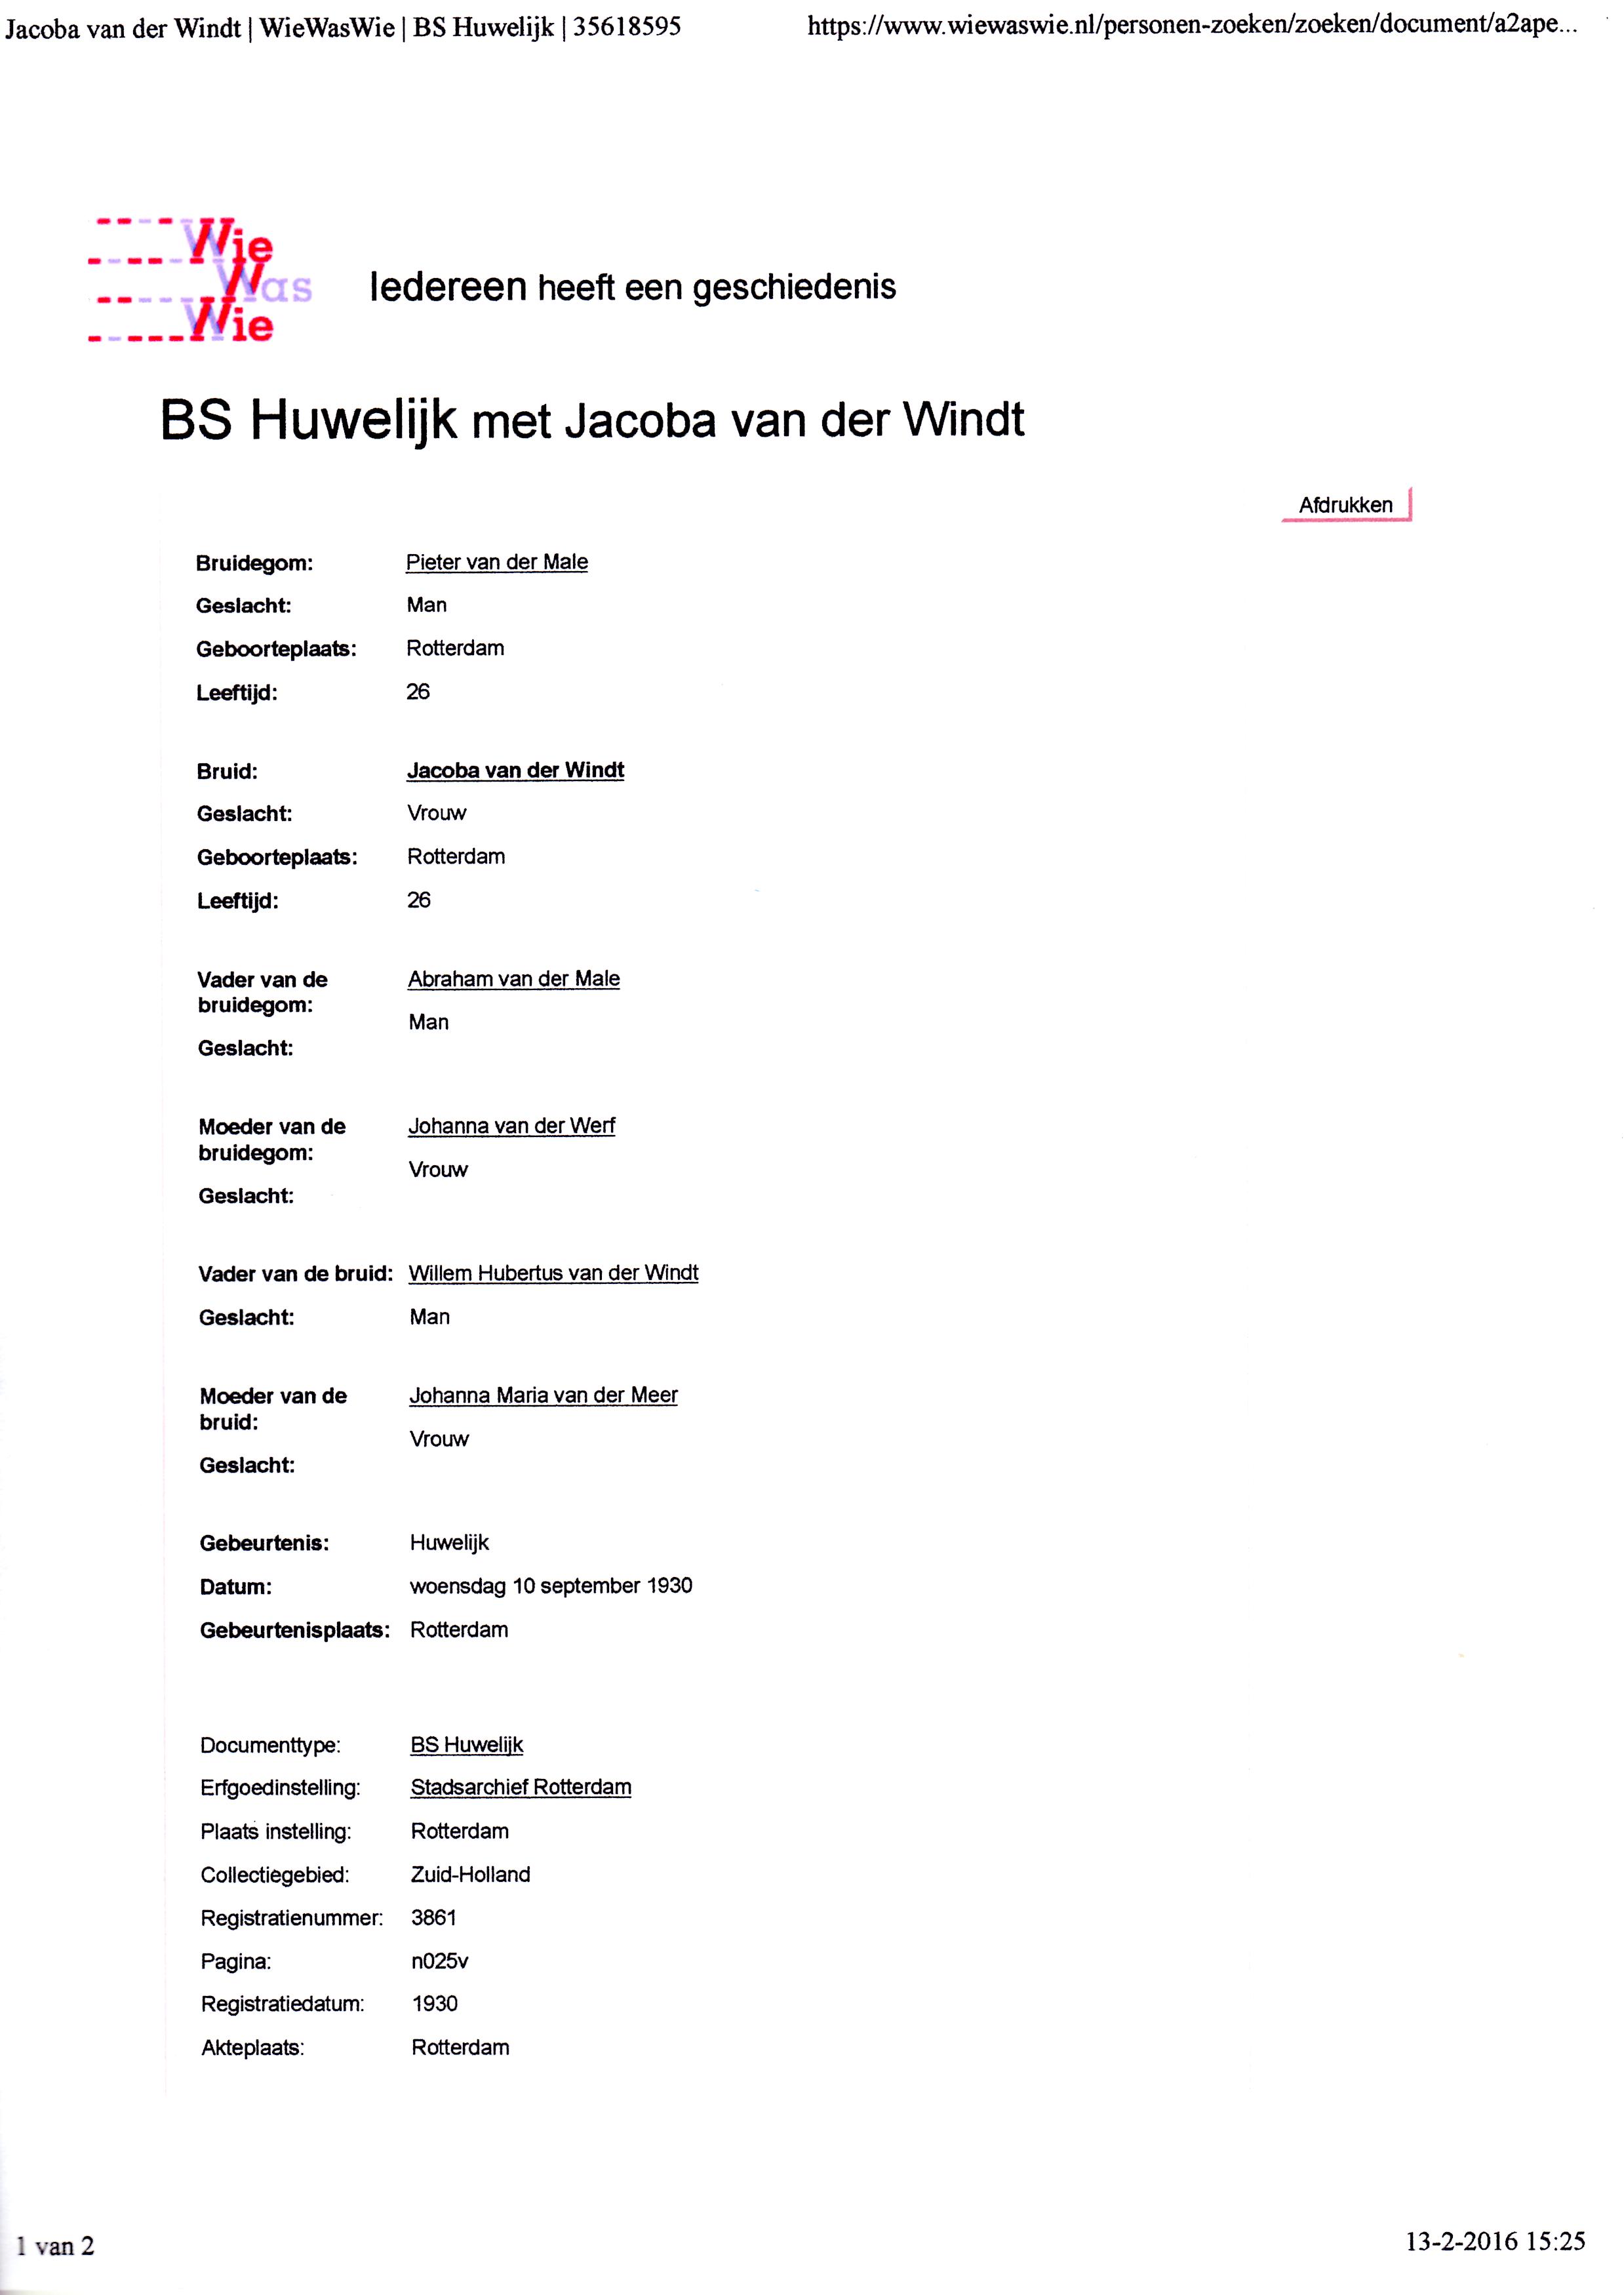 1930-09-10 Huwelijk Jacoba (Co) van der Windt en Pieter van der Male